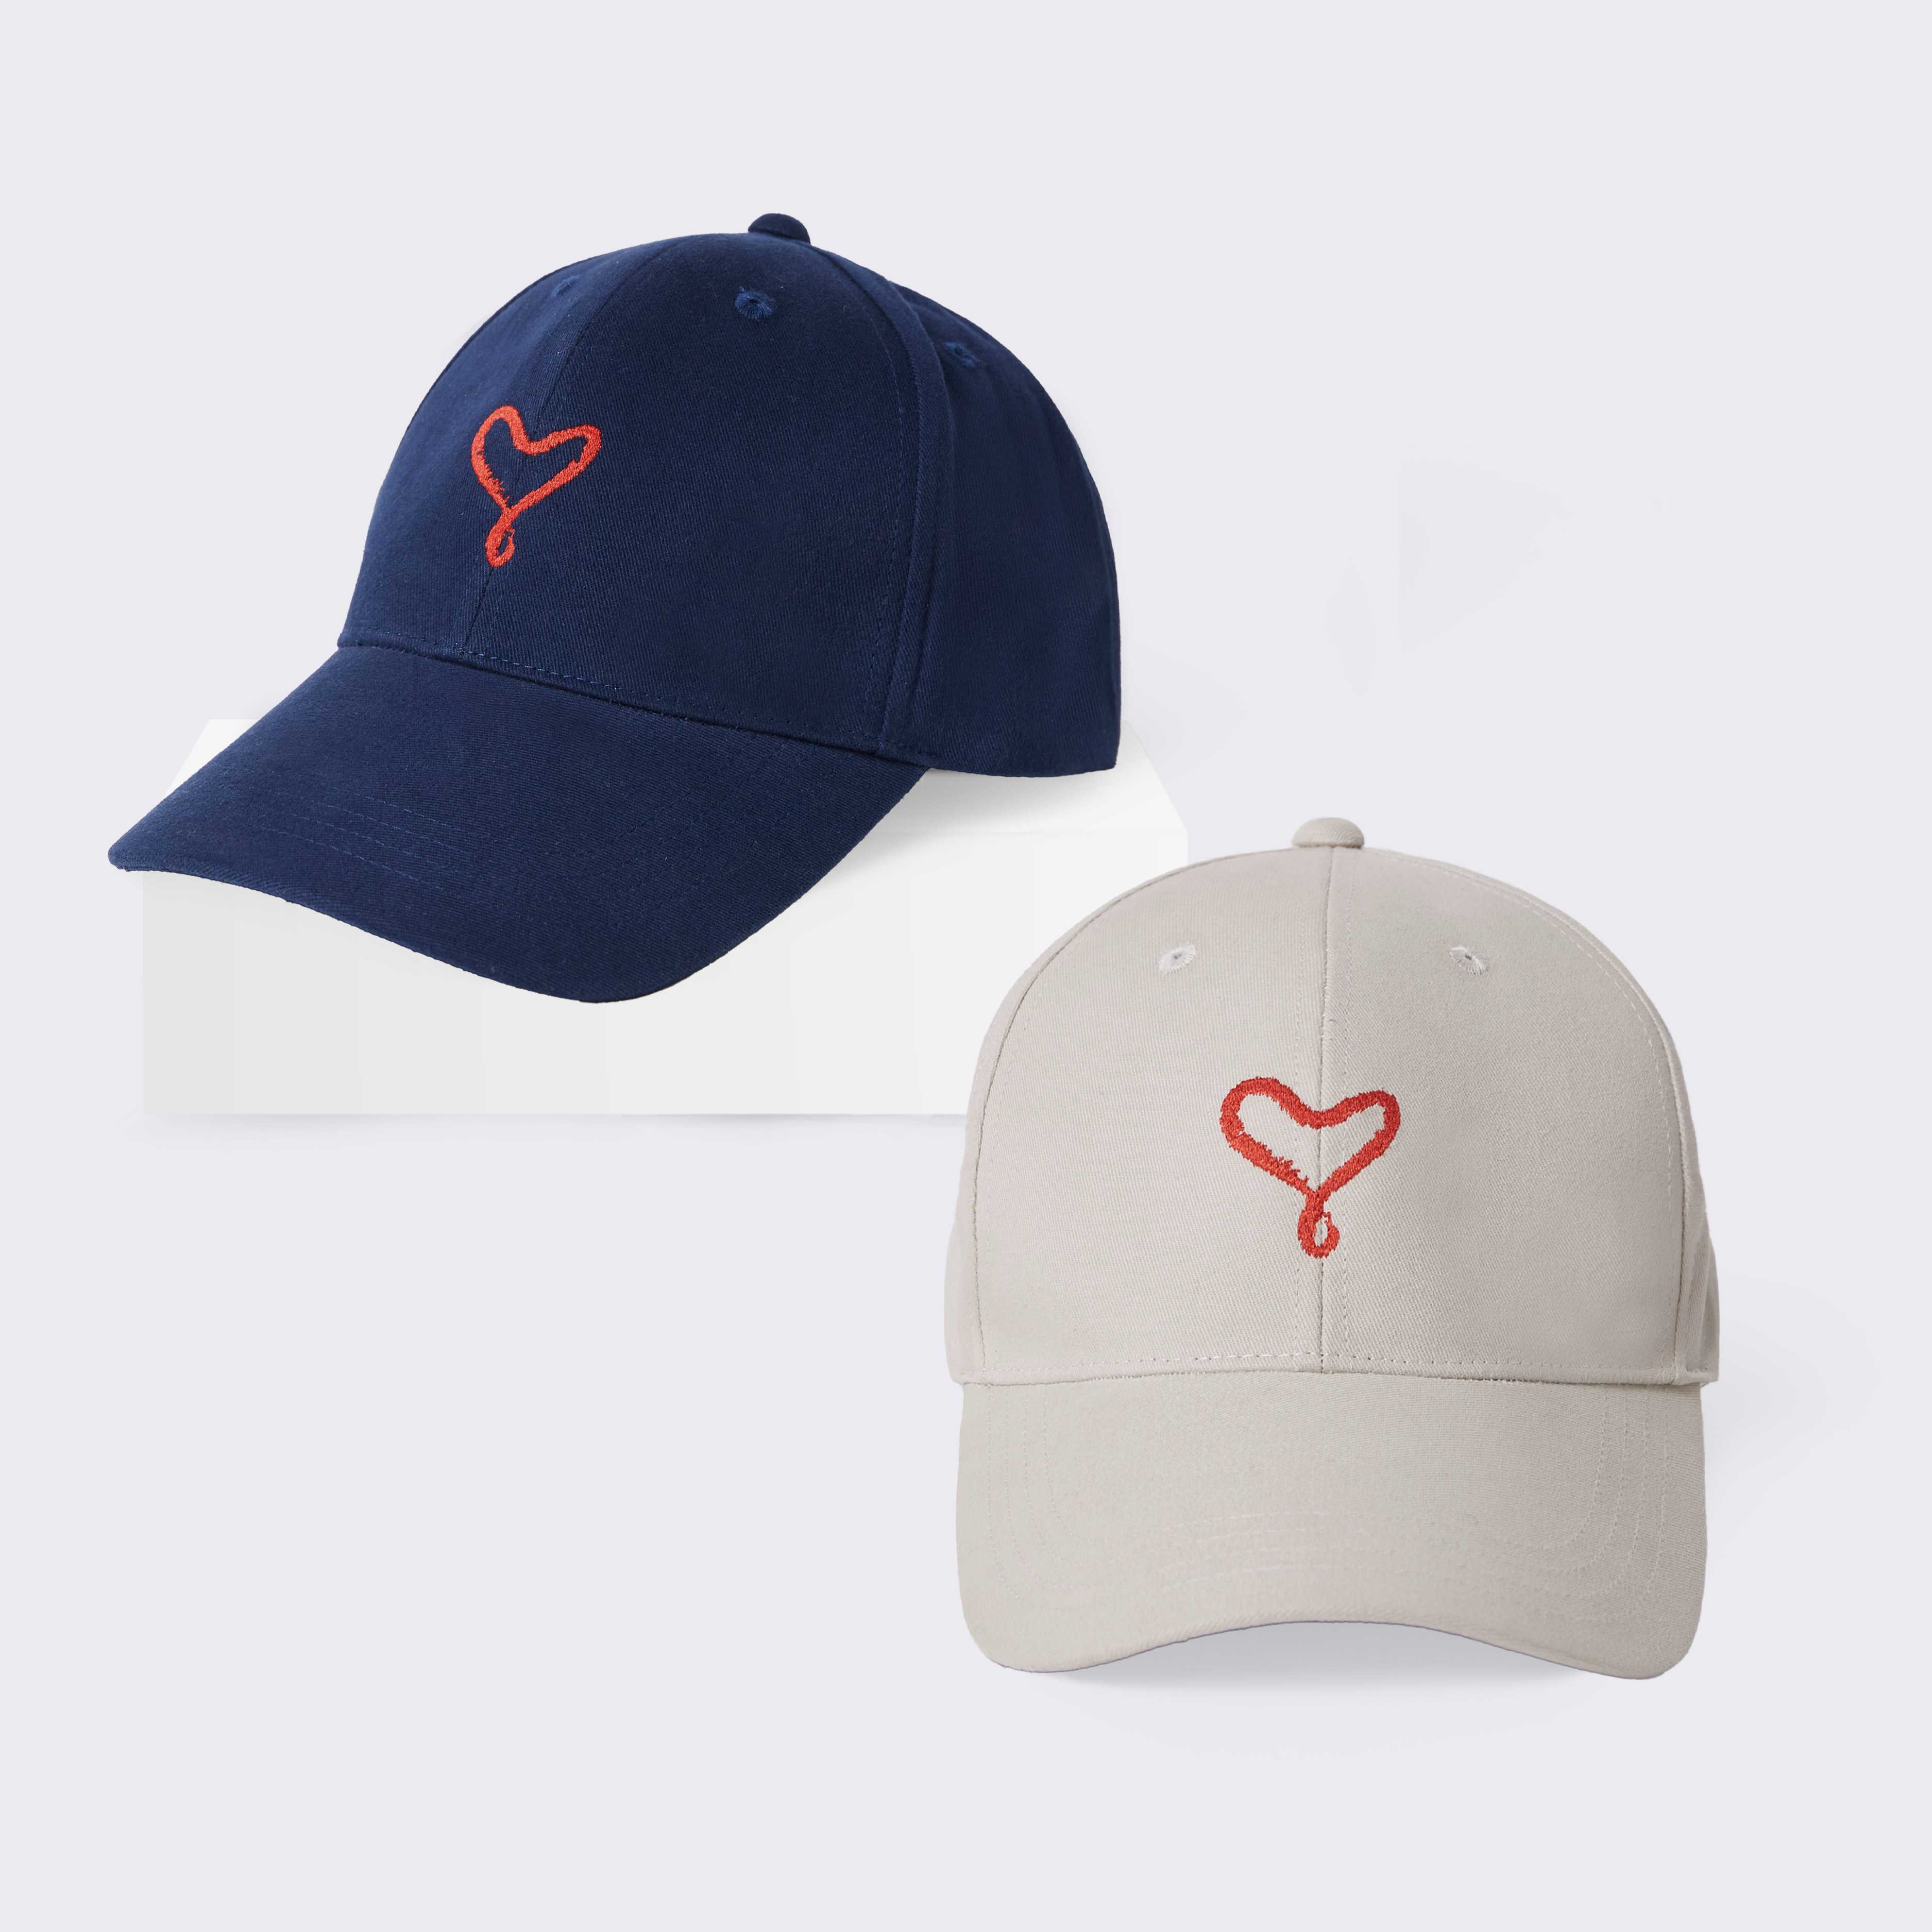 หมวก cap ลาย Infinity heart